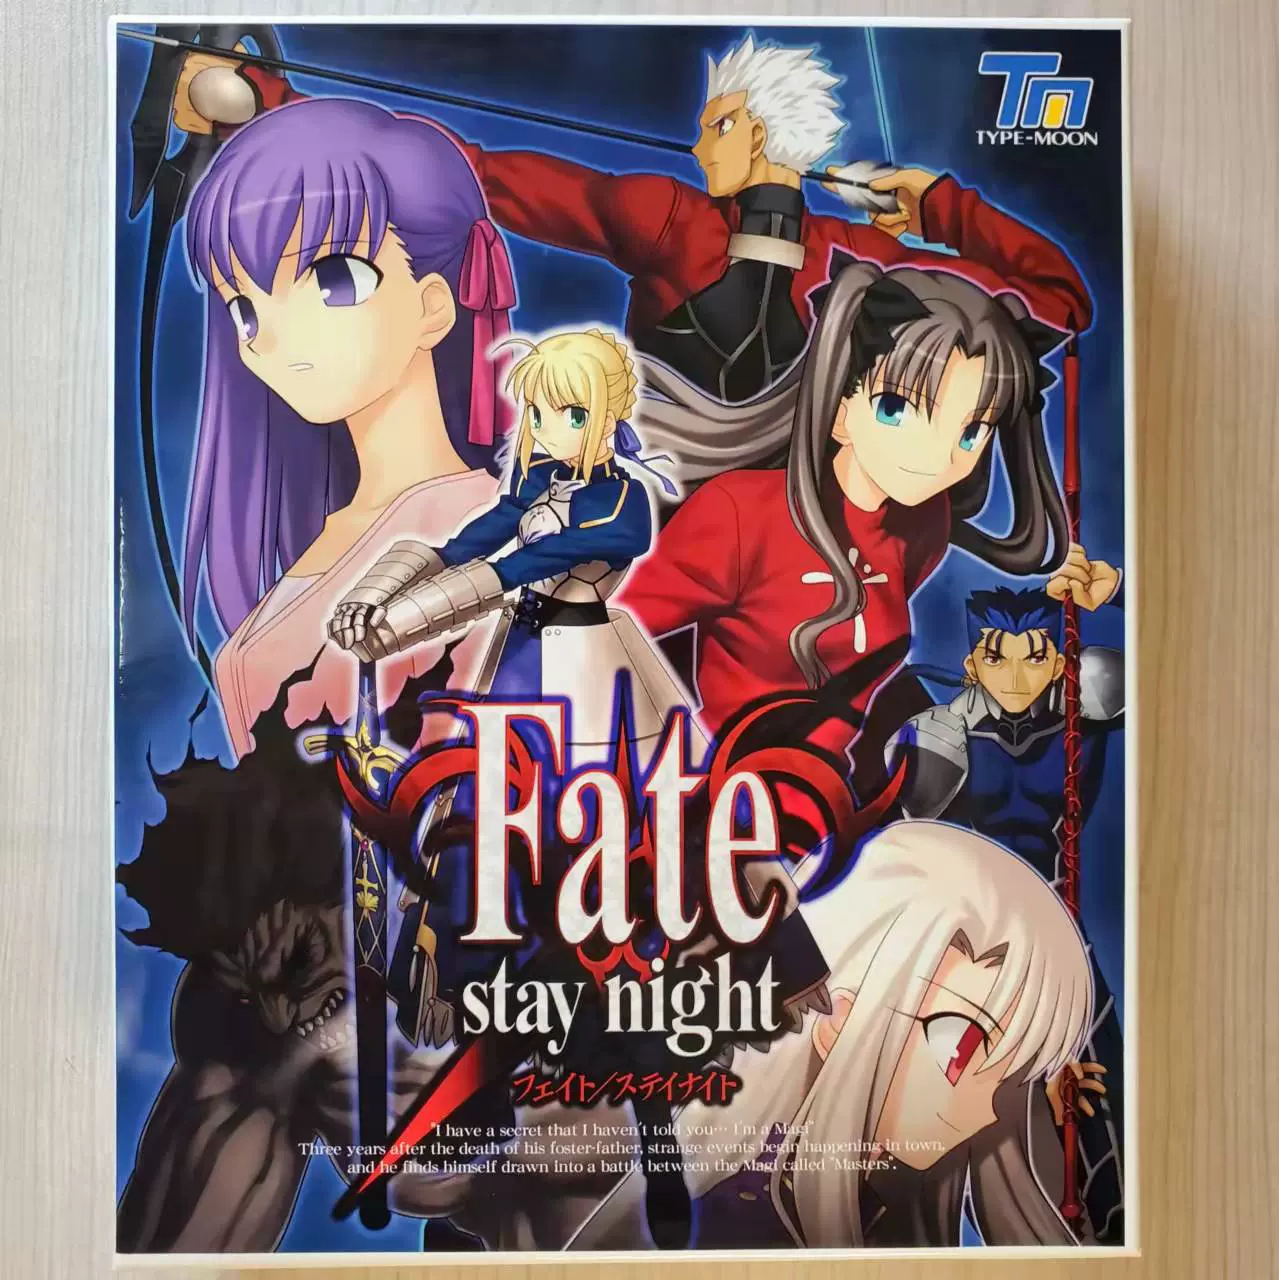 中古型月Fate/stay night 初回限定版游戏本体周边CD-ROM-Taobao